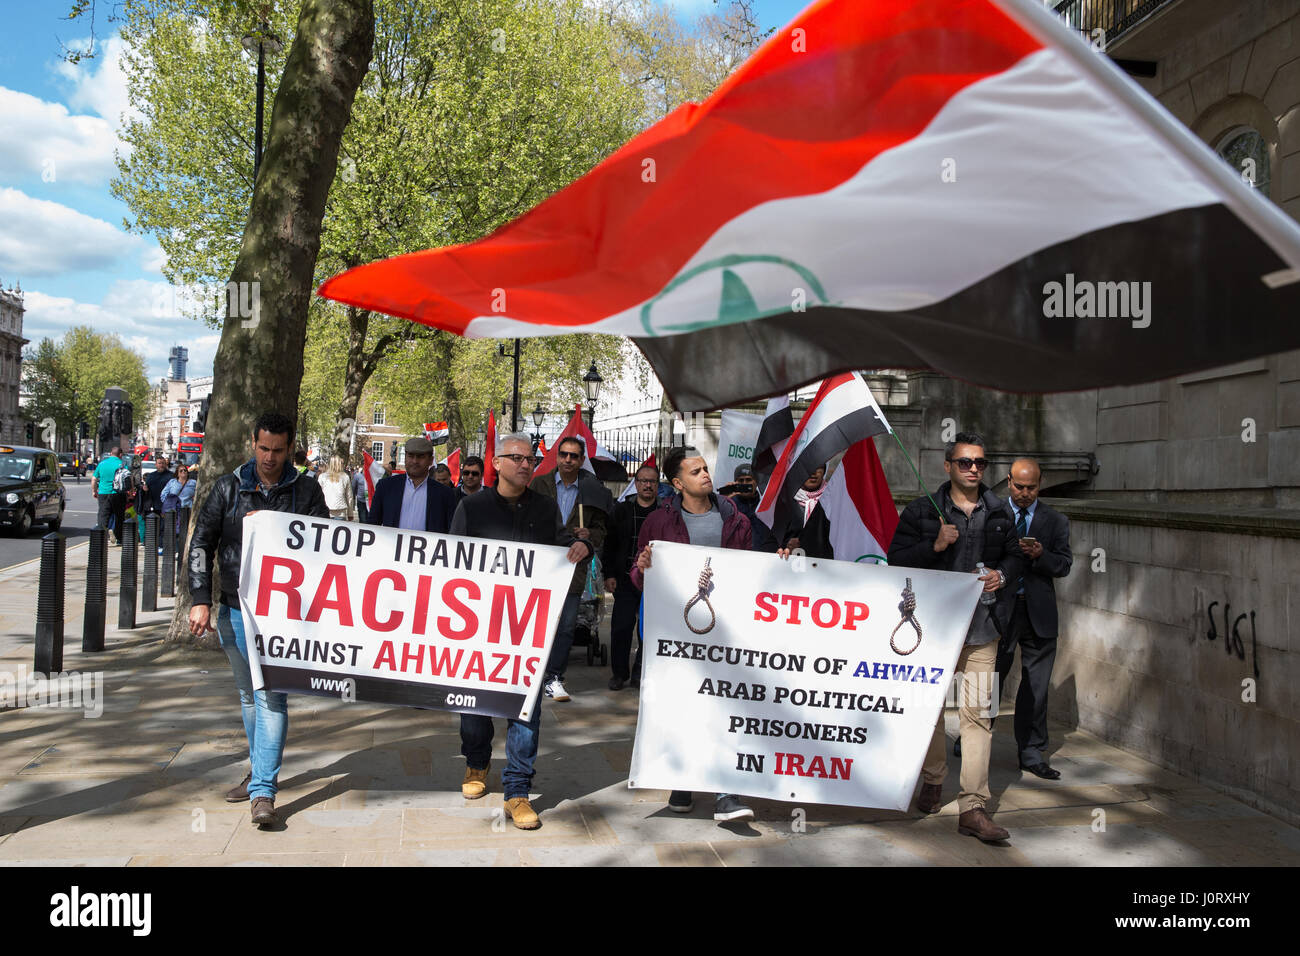 London, UK. 15. April 2017. Ahwazi arabische Aktivisten protestieren in Whitehall gegen Menschenrechtsverletzungen gegen die Ahwazi arabischen Gemeinschaft im Iran begangen. Bildnachweis: Mark Kerrison/Alamy Live-Nachrichten Stockfoto